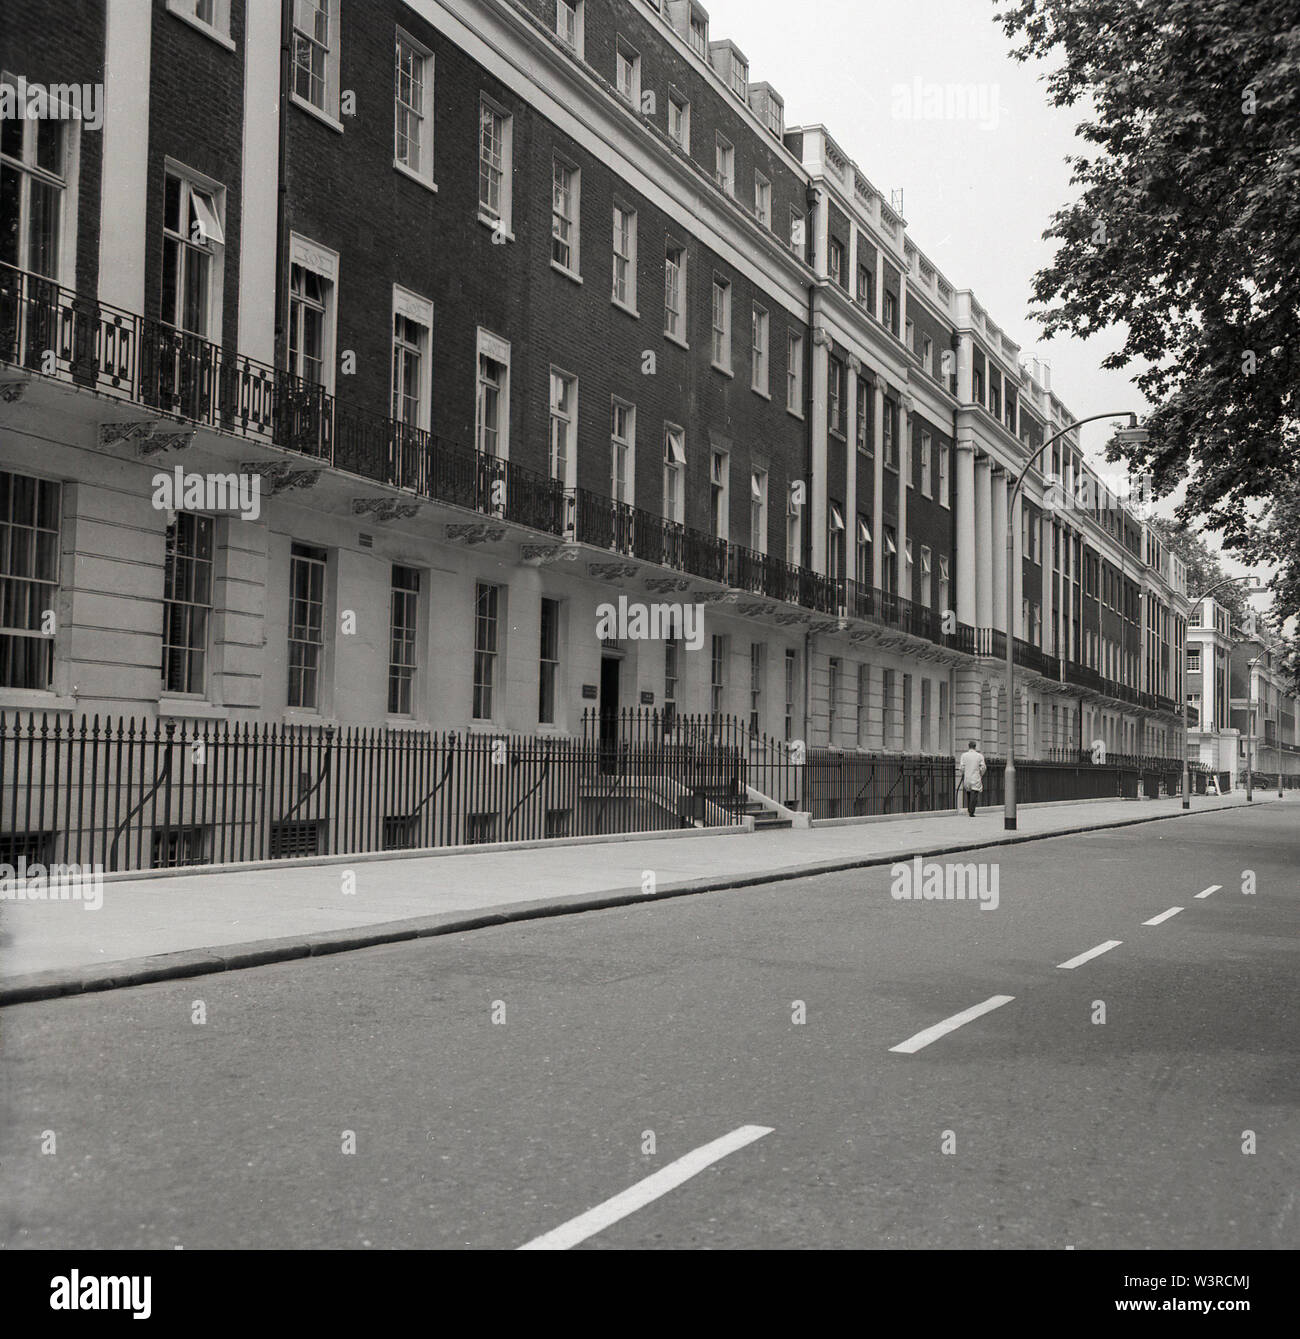 1960, historische, ein Blick auf die Häuser in Gordon Square, Bloomsbury, London, England, eine elegante Terrasse von großen, 6-stöckigen Häuser im Bedford Immobilien. Von Thomas Cubitt zwischen 1820-1850 für den Herzog von Bedford erbaut und nach seiner zweiten Frau benannt. Der berühmte Ökonom John Maynard Keynes lebte in Nr. 46, und vorher das Schriftsteller Viginia Woolf. Stockfoto